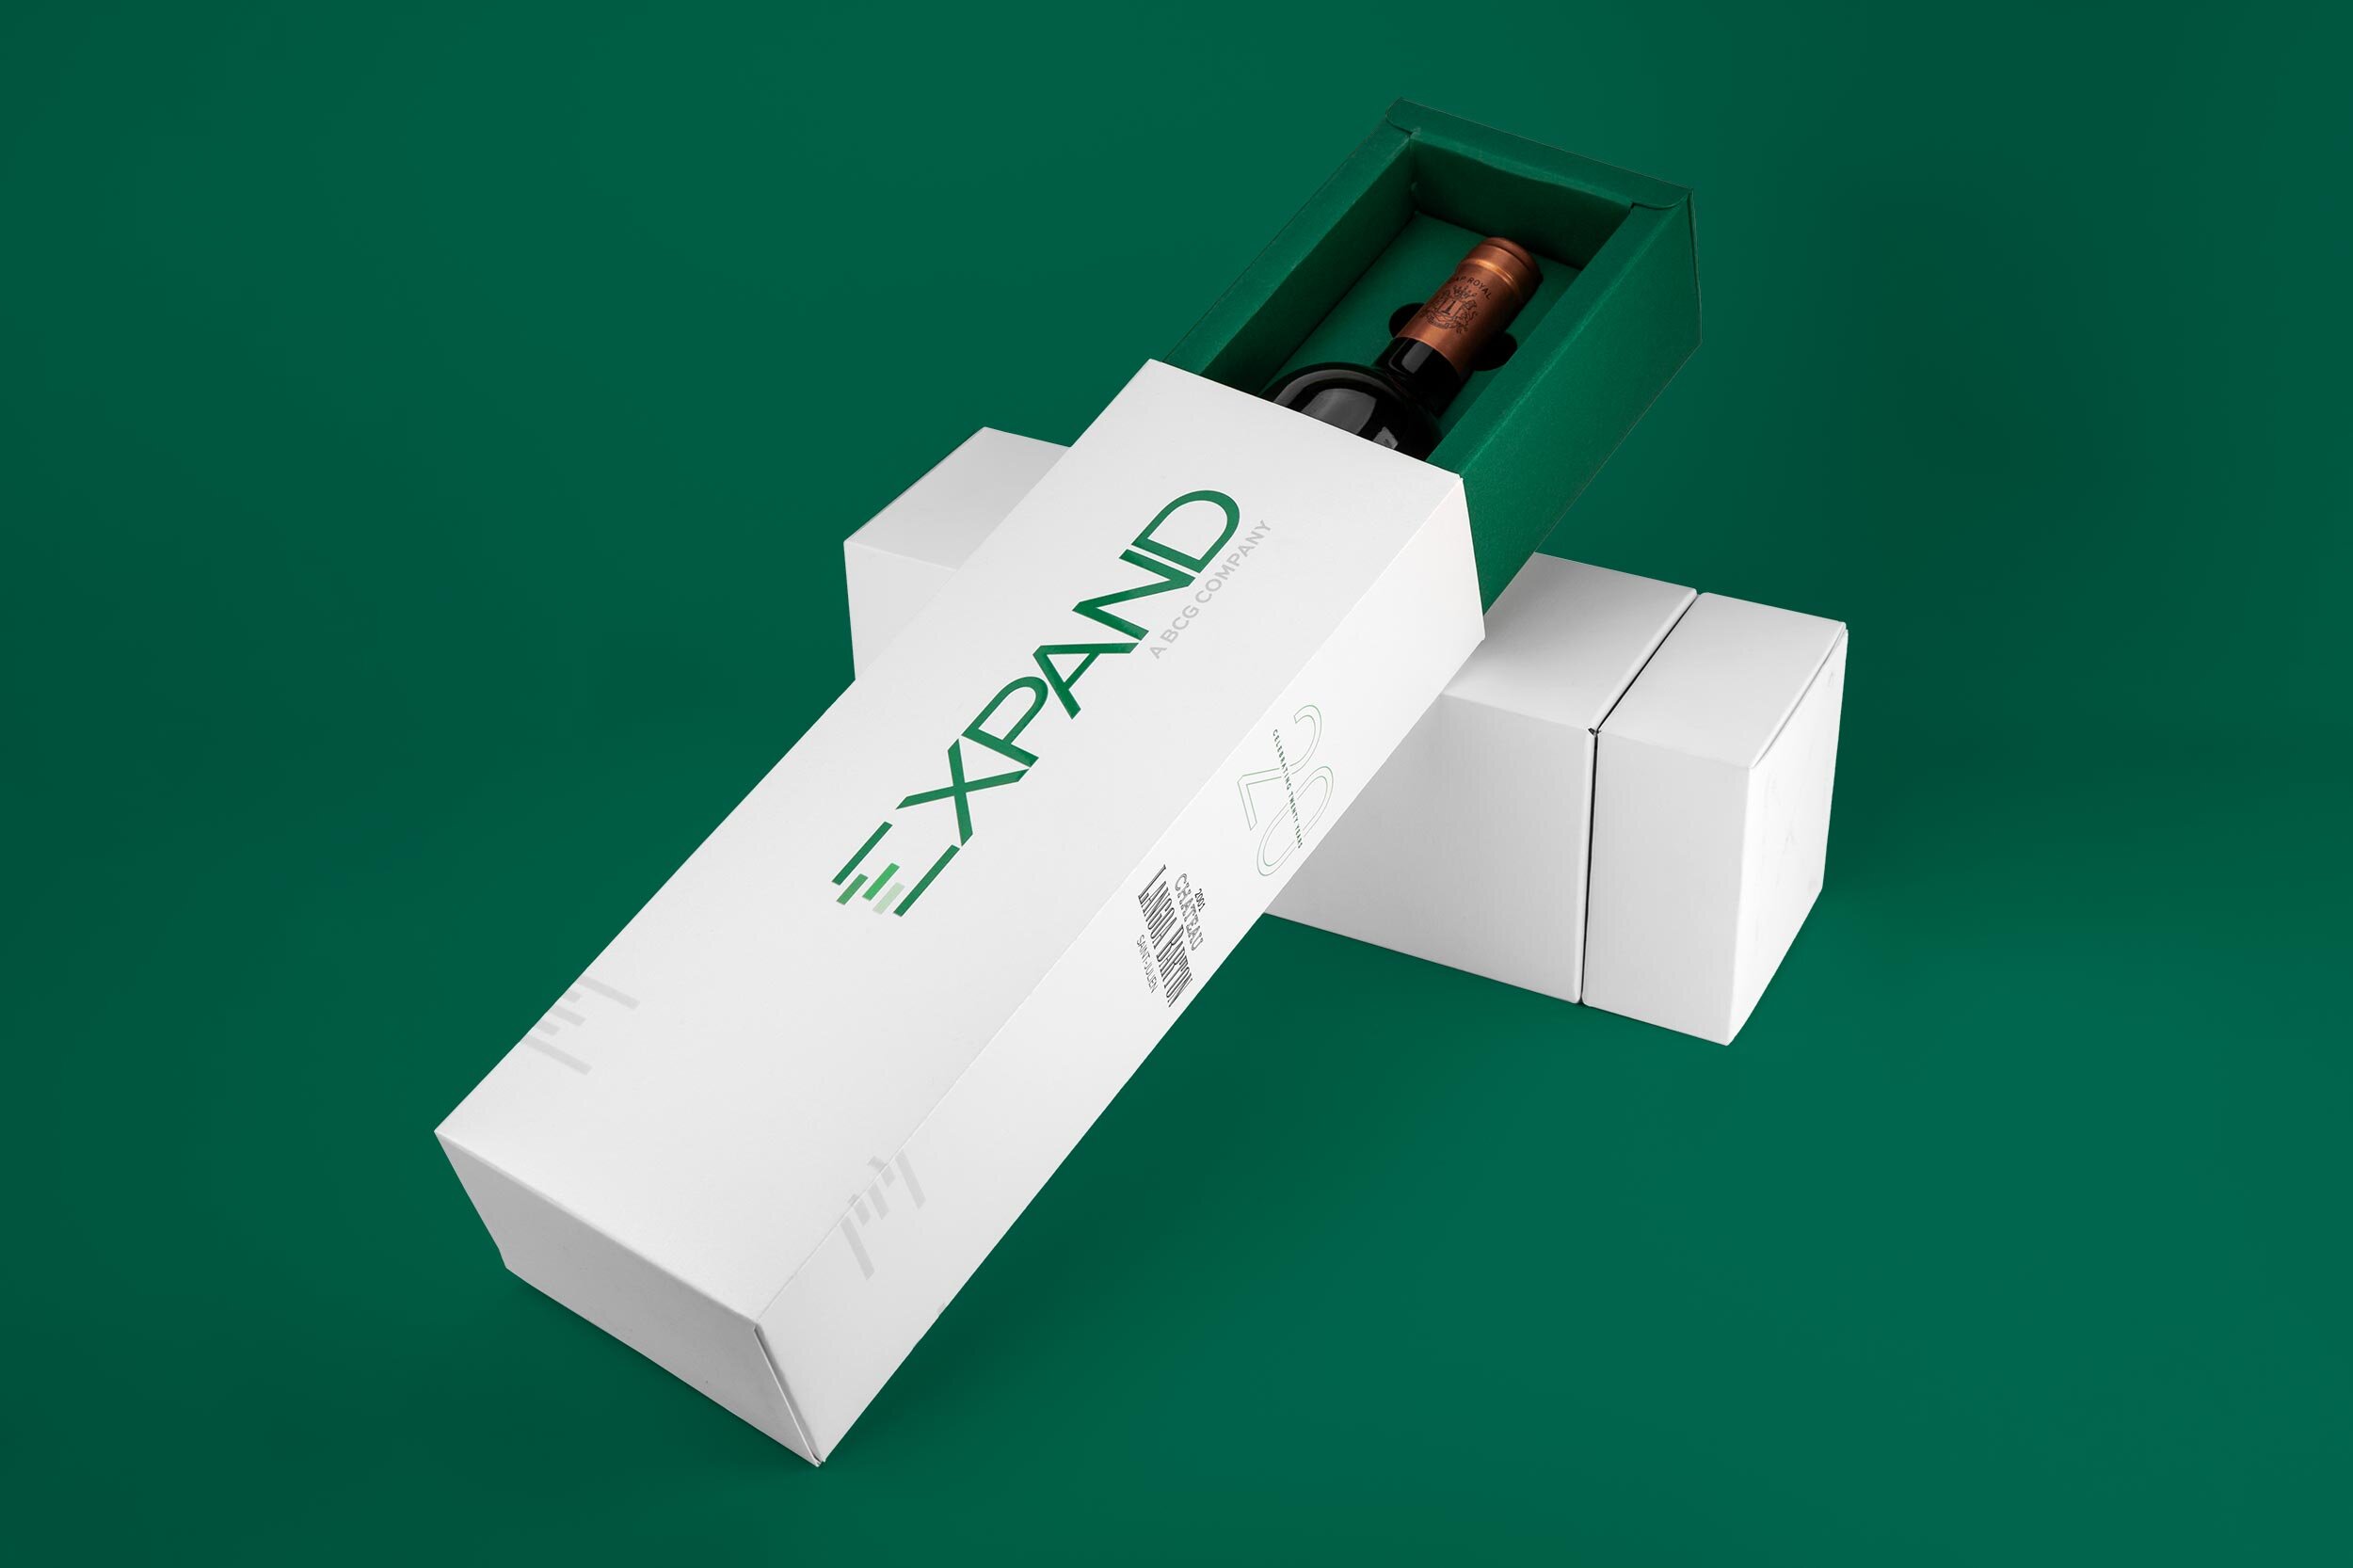 Expand-Sliding-Drawer-Hybrid-Bottle-Box-Packaging-Design.jpg